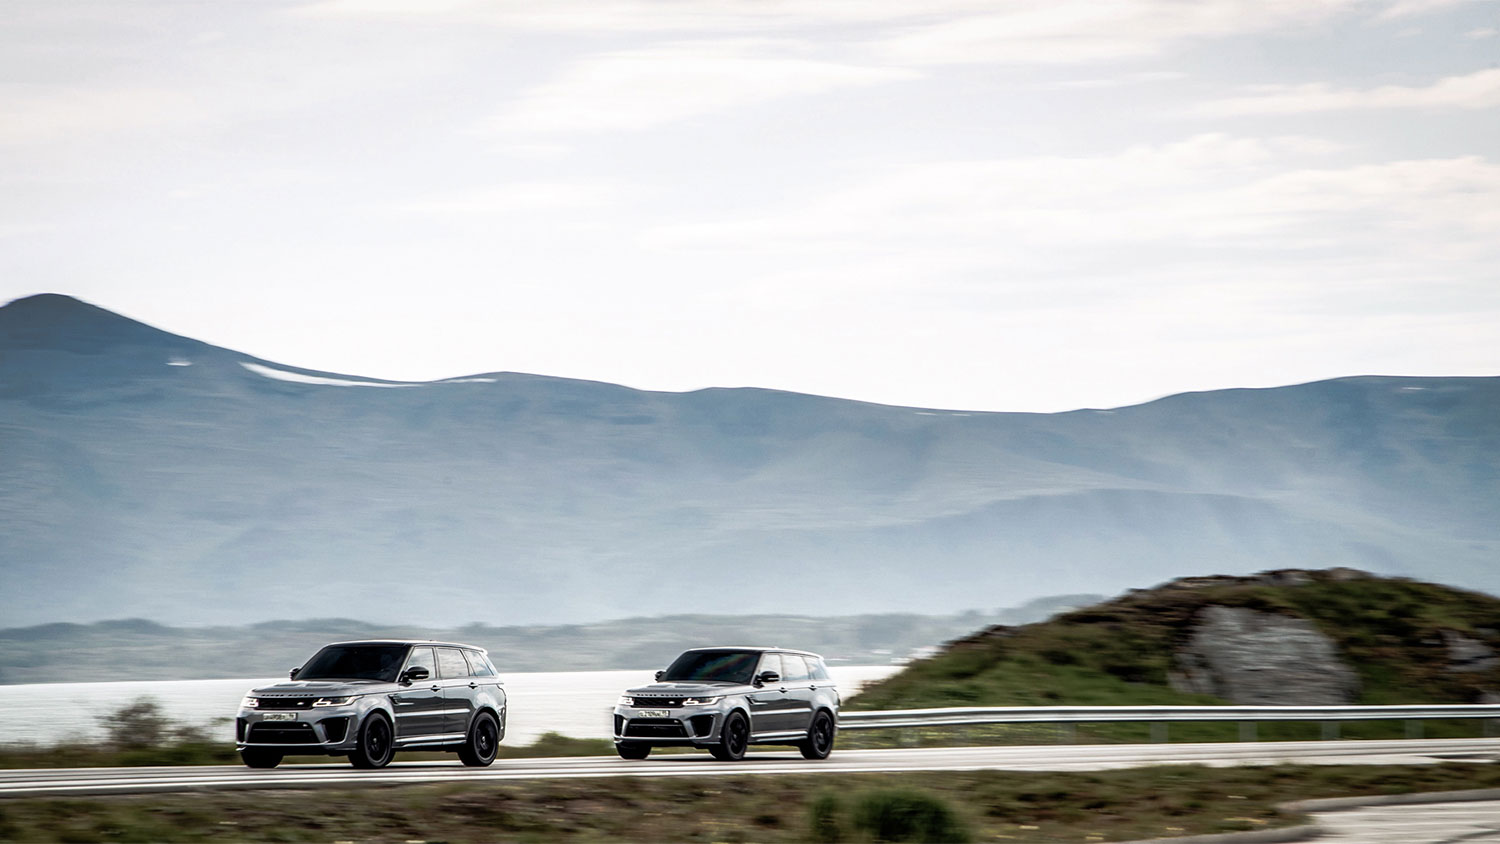 Offroad met de Range Rover SVR in de nieuwste James Bond-film No Time To Die